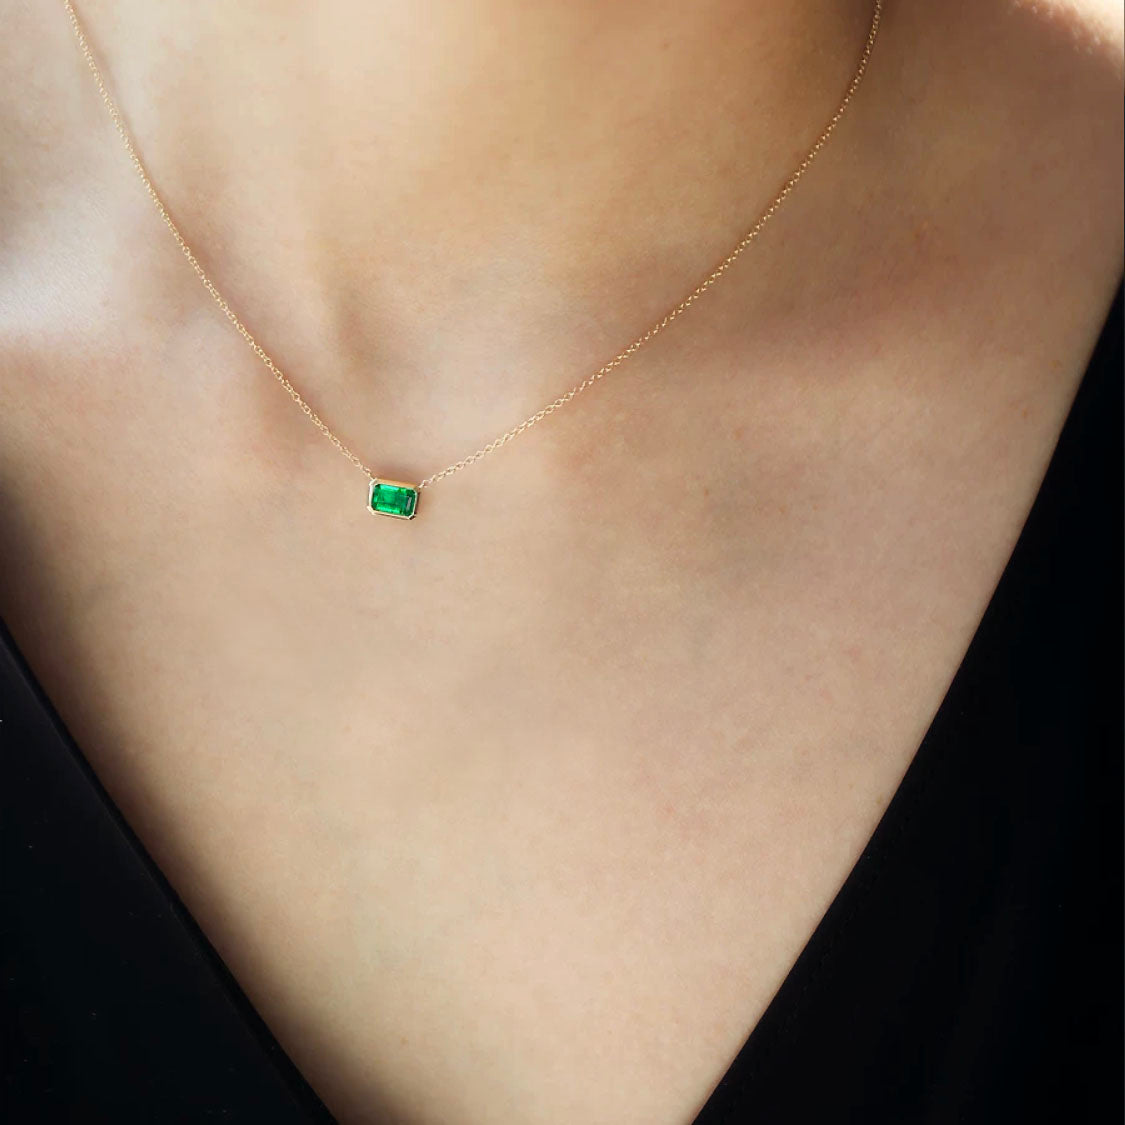 bezel set emerald necklace in 18k gold on neck